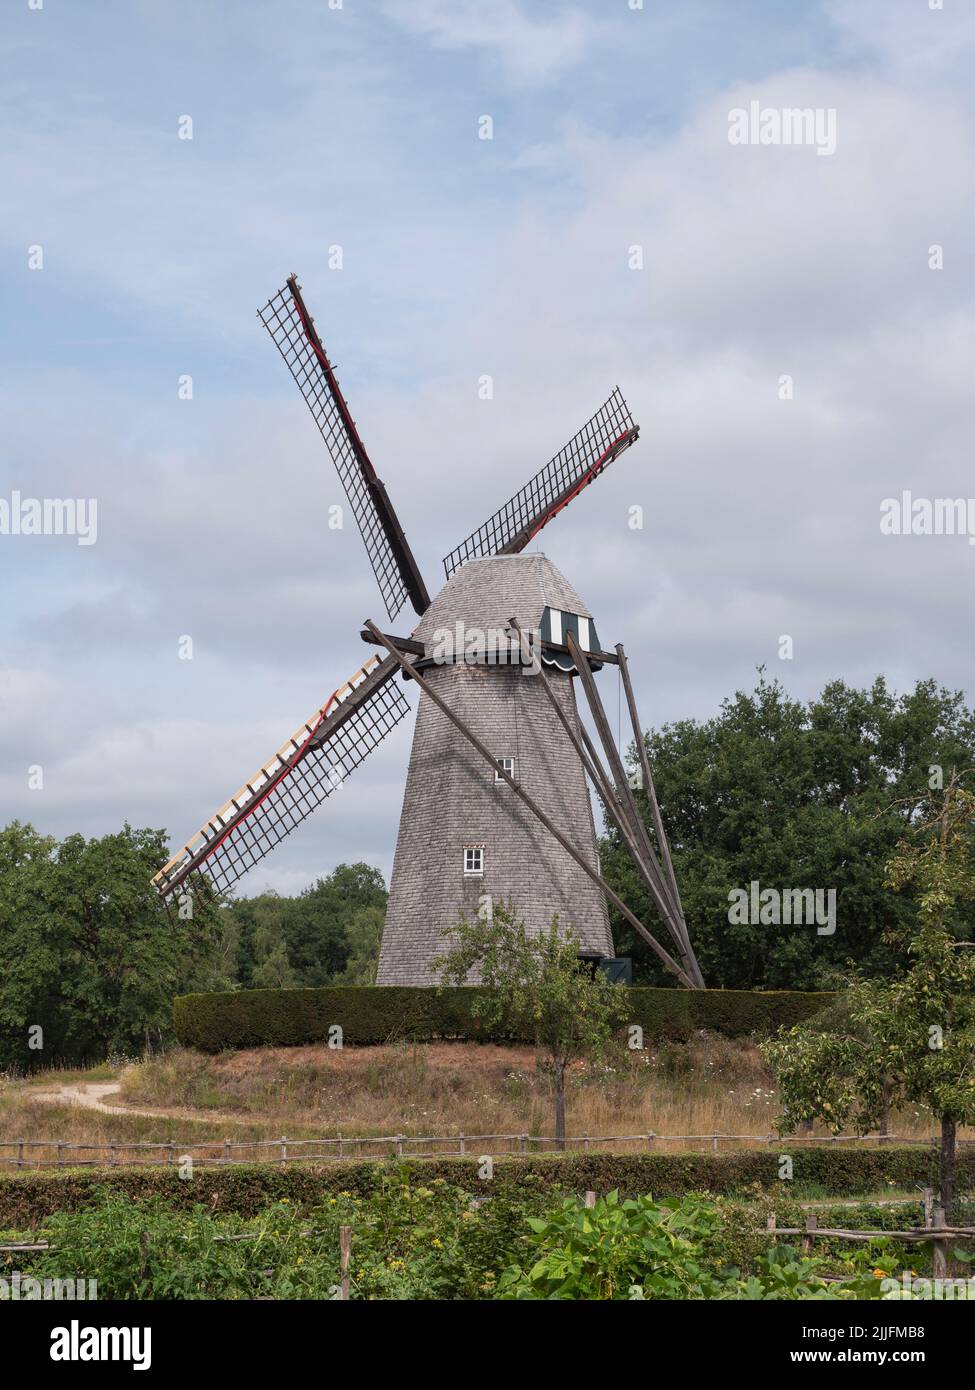 Photo de paysage d'un ancien moulin à vent à Bokrijk, Belgique avec un ciel légèrement nuageux Banque D'Images